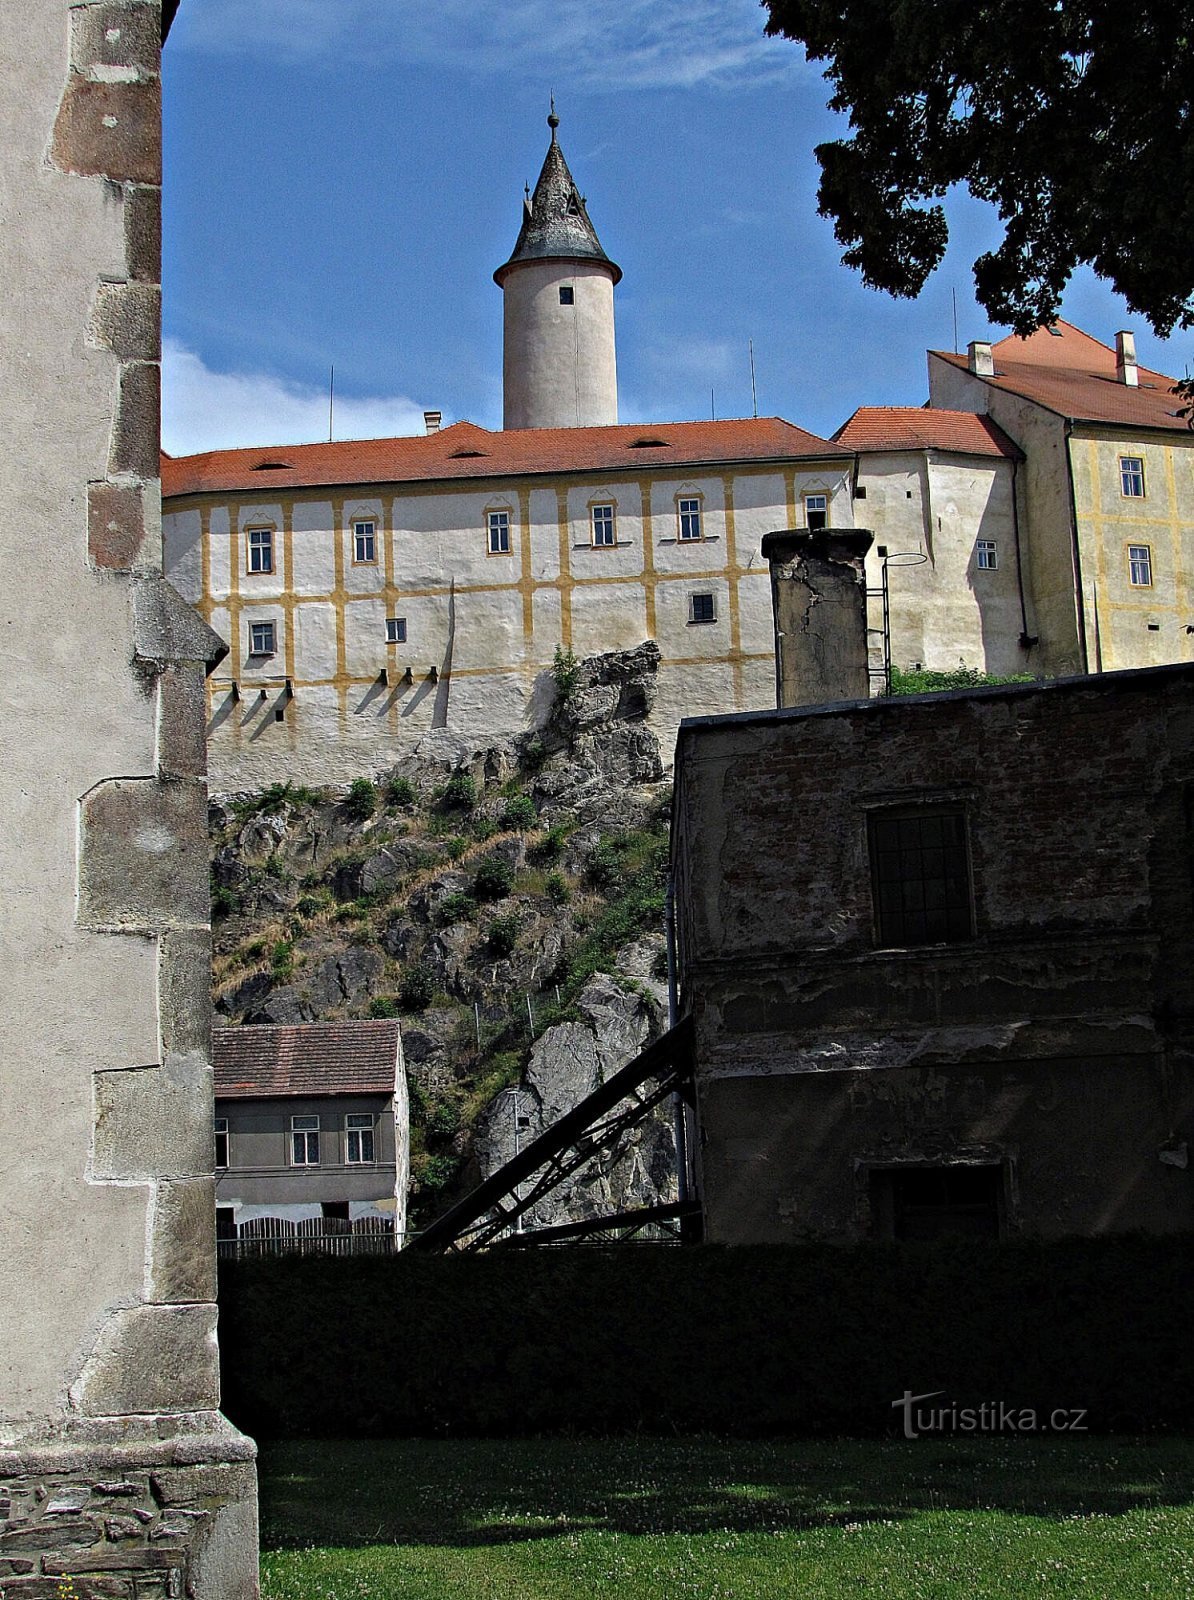 Teren zamku w Ledču nad Sázavou